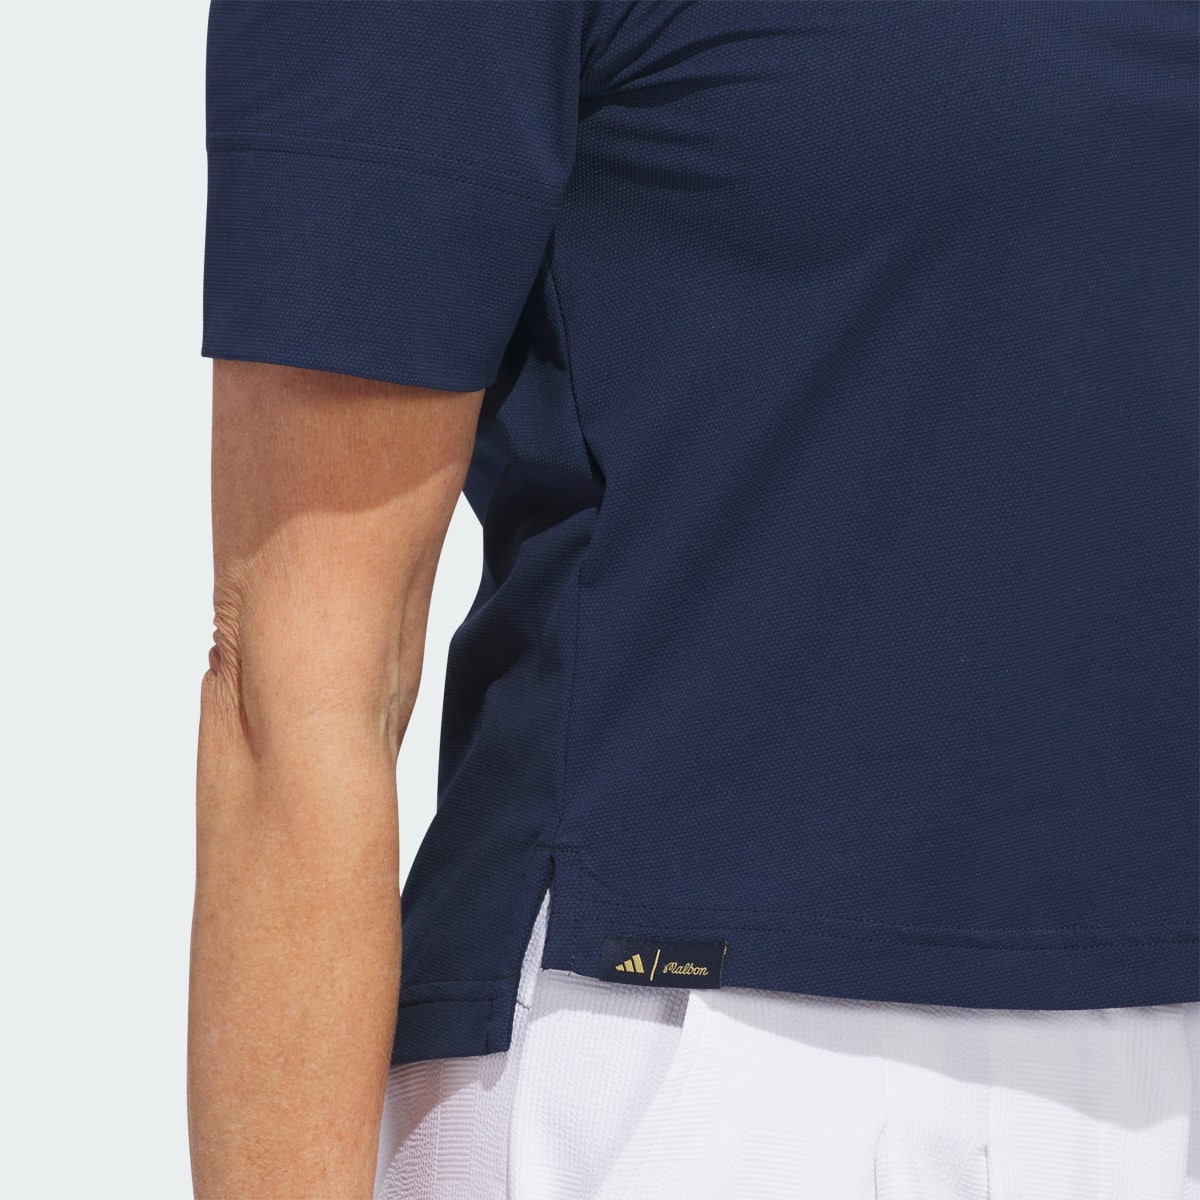 Adidas Malbon Polo Shirt. 8